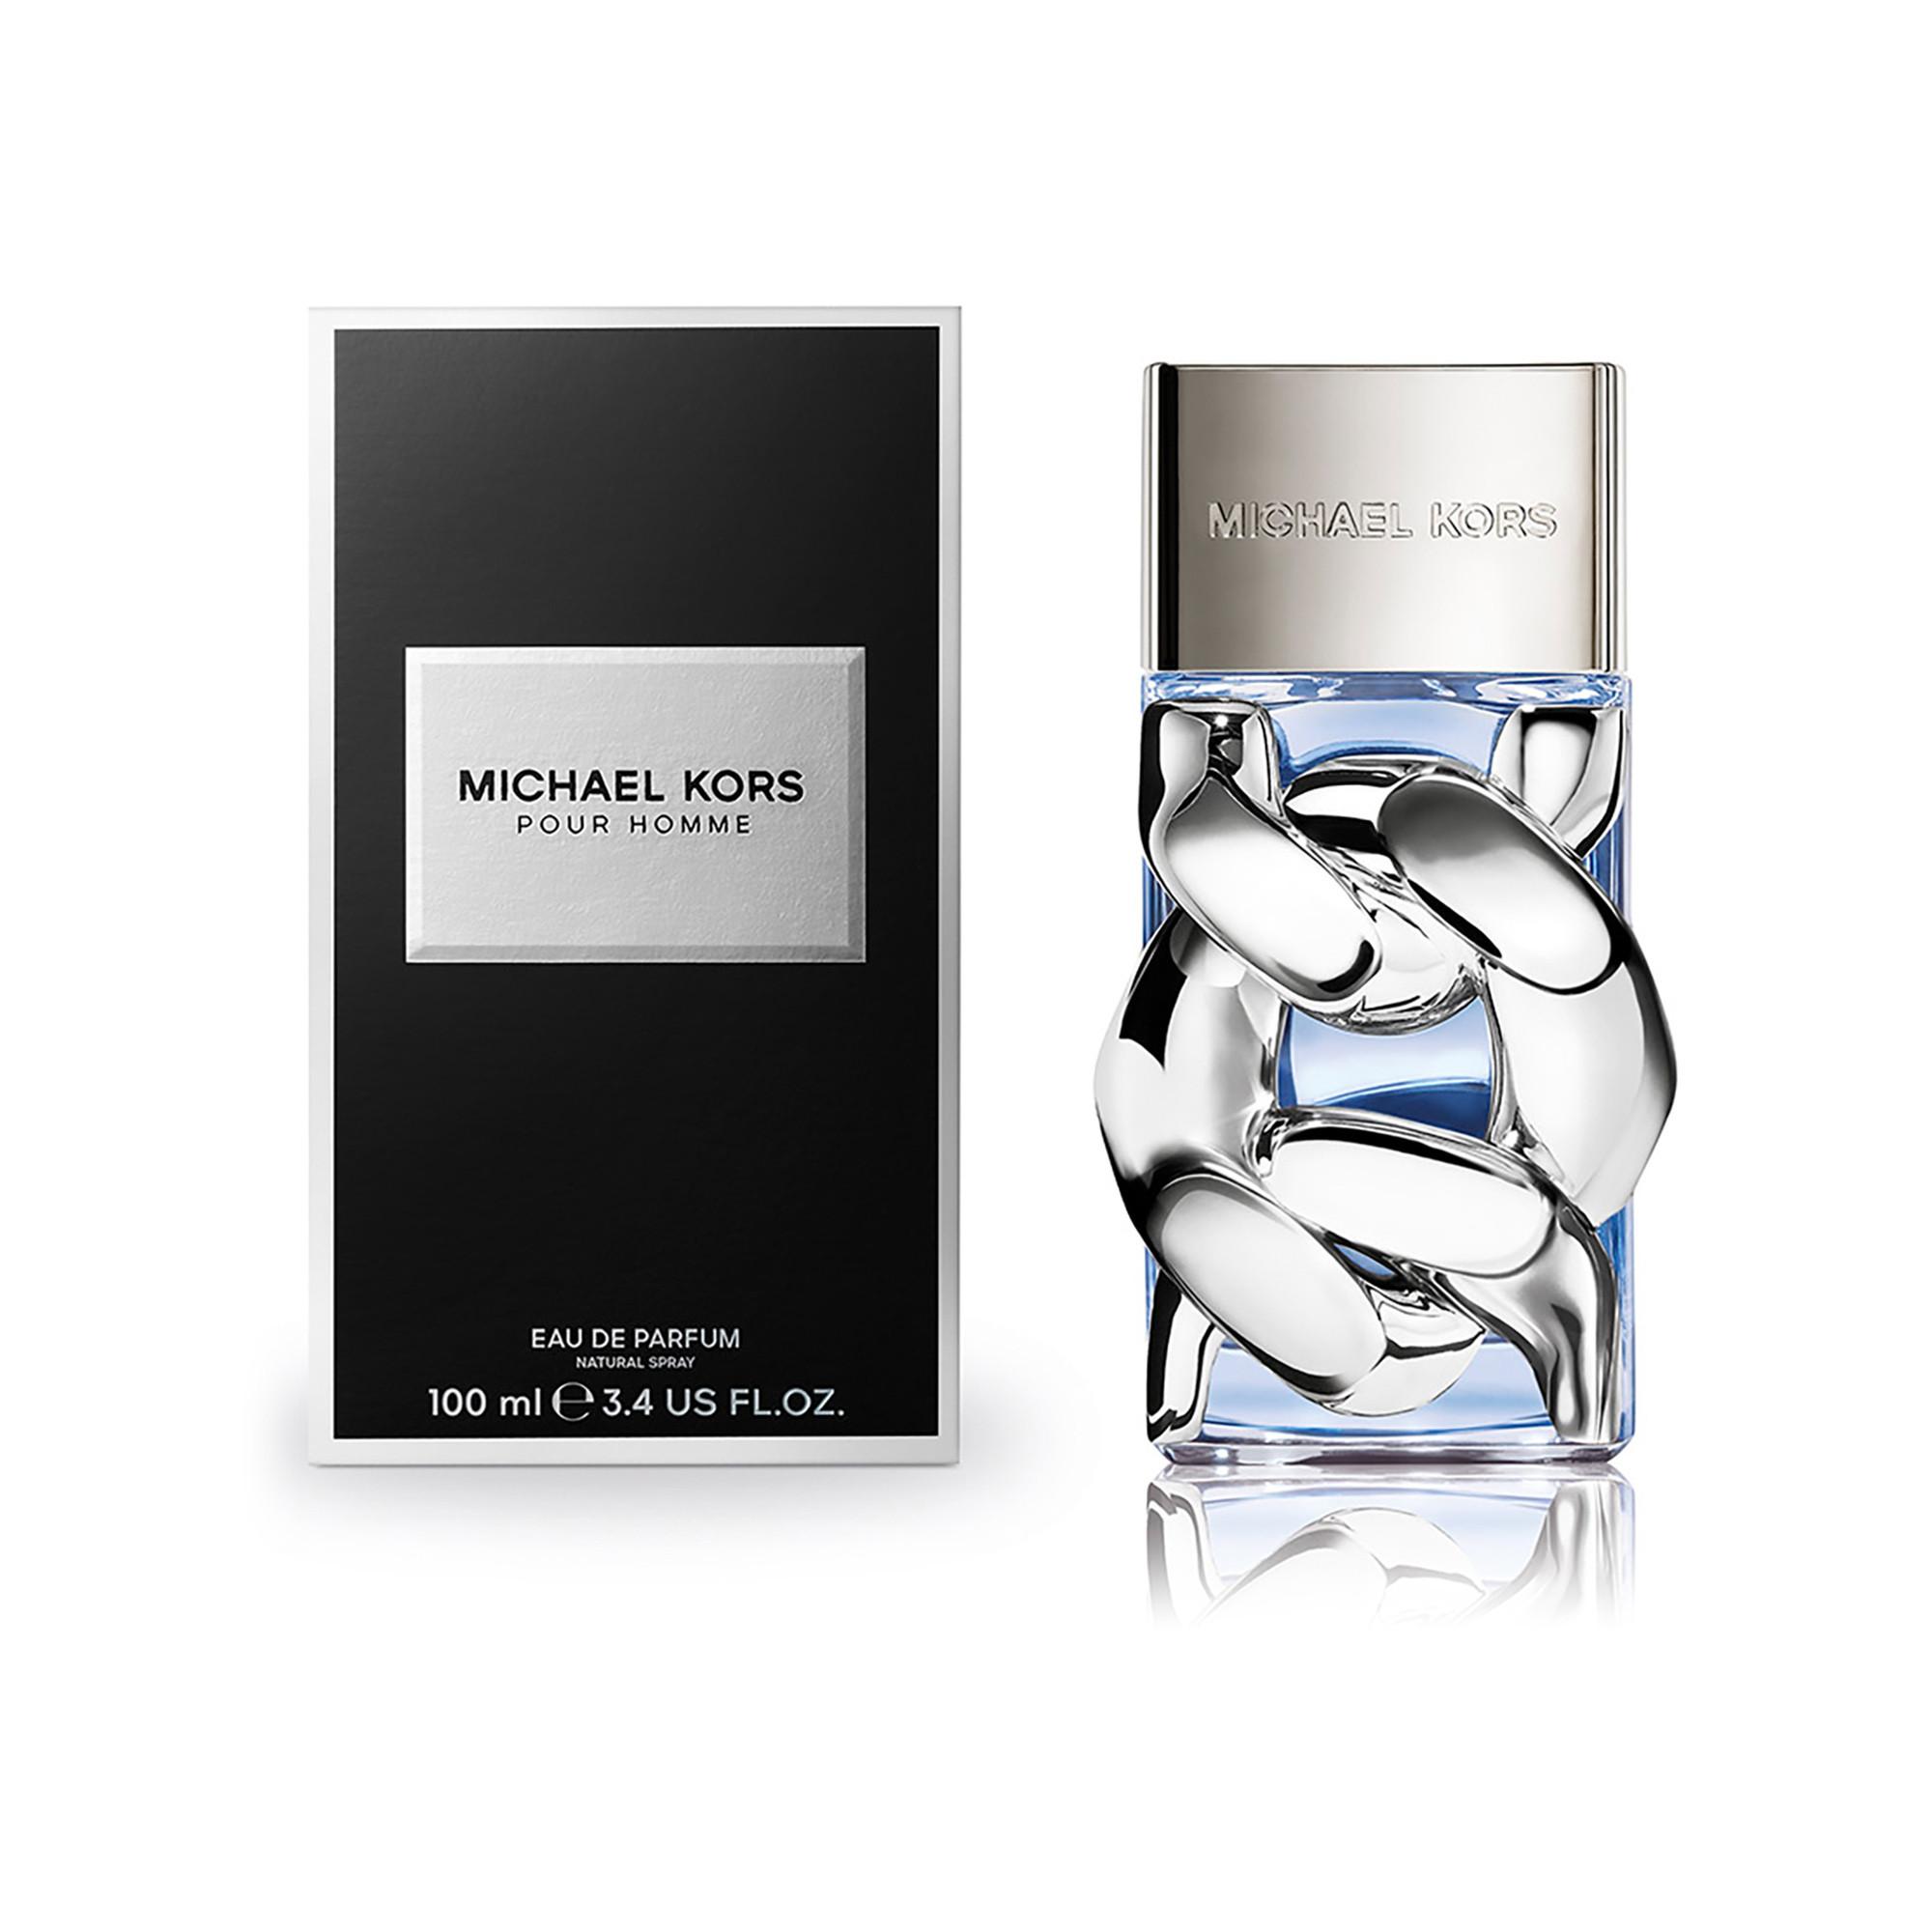 MICHAEL KORS Pour Homme Eau de Parfum 